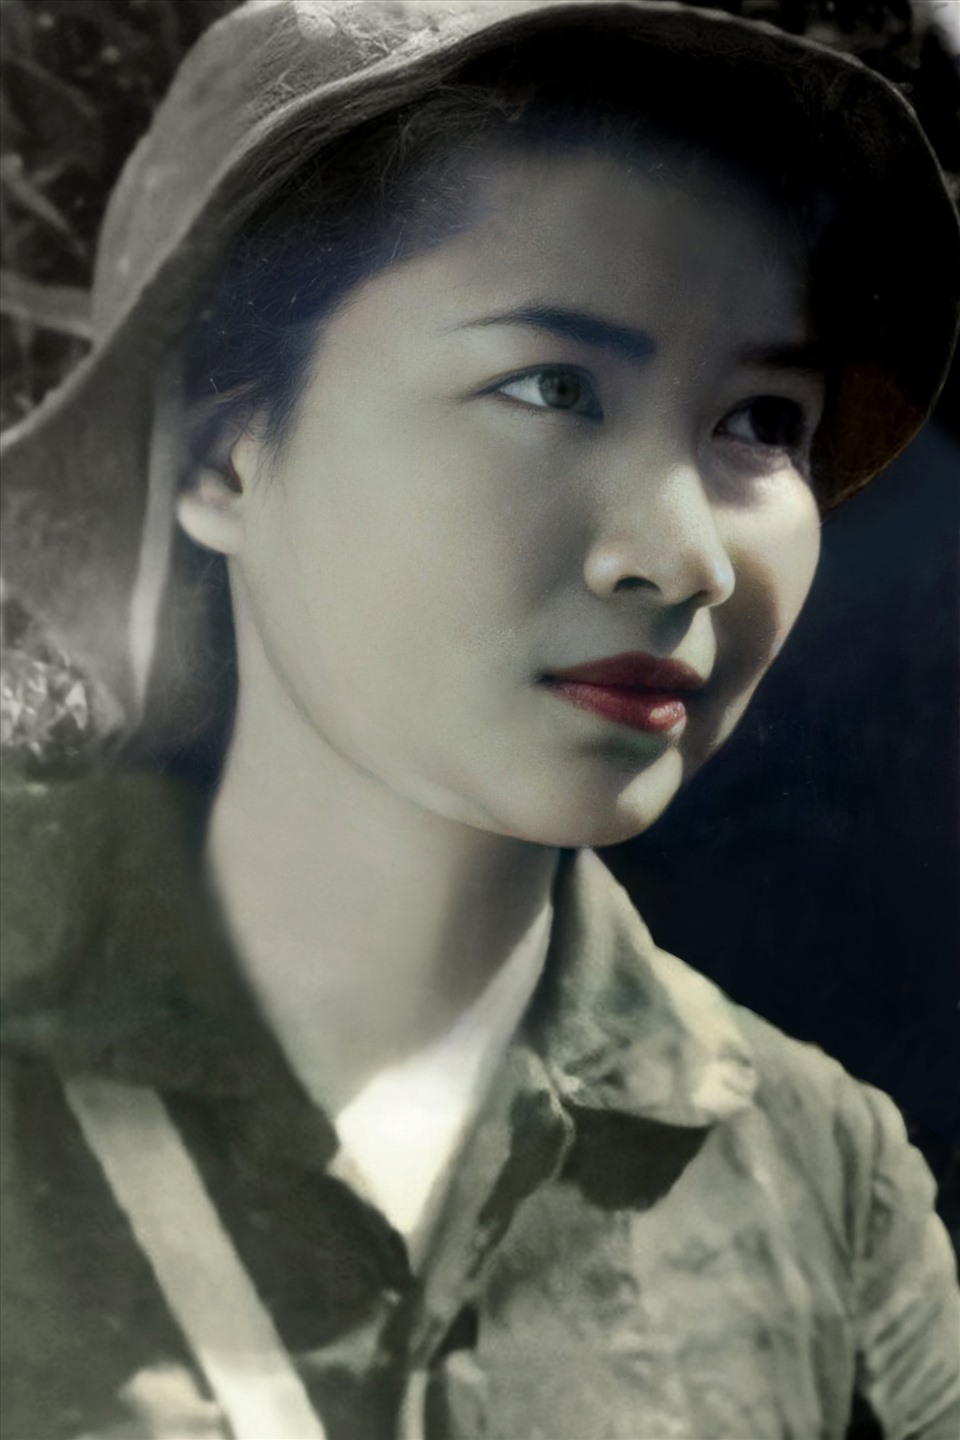 Bức ảnh chân dung của nhà báo, liệt sỹ Phạm Thị Ngọc Huệ sau khi được ông Huy chỉnh sửa.